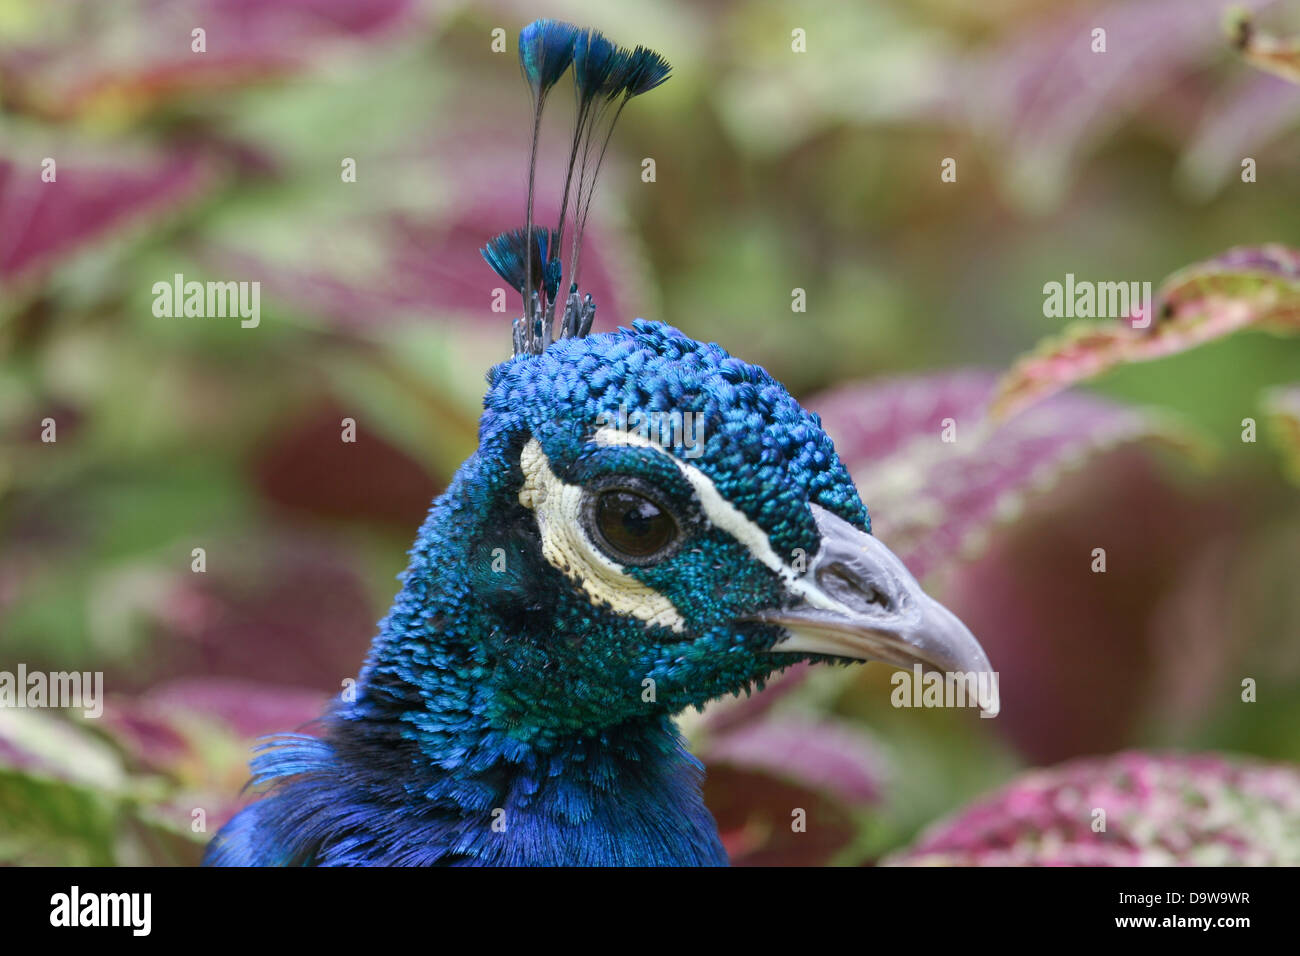 Peacock Portrait Stock Photo